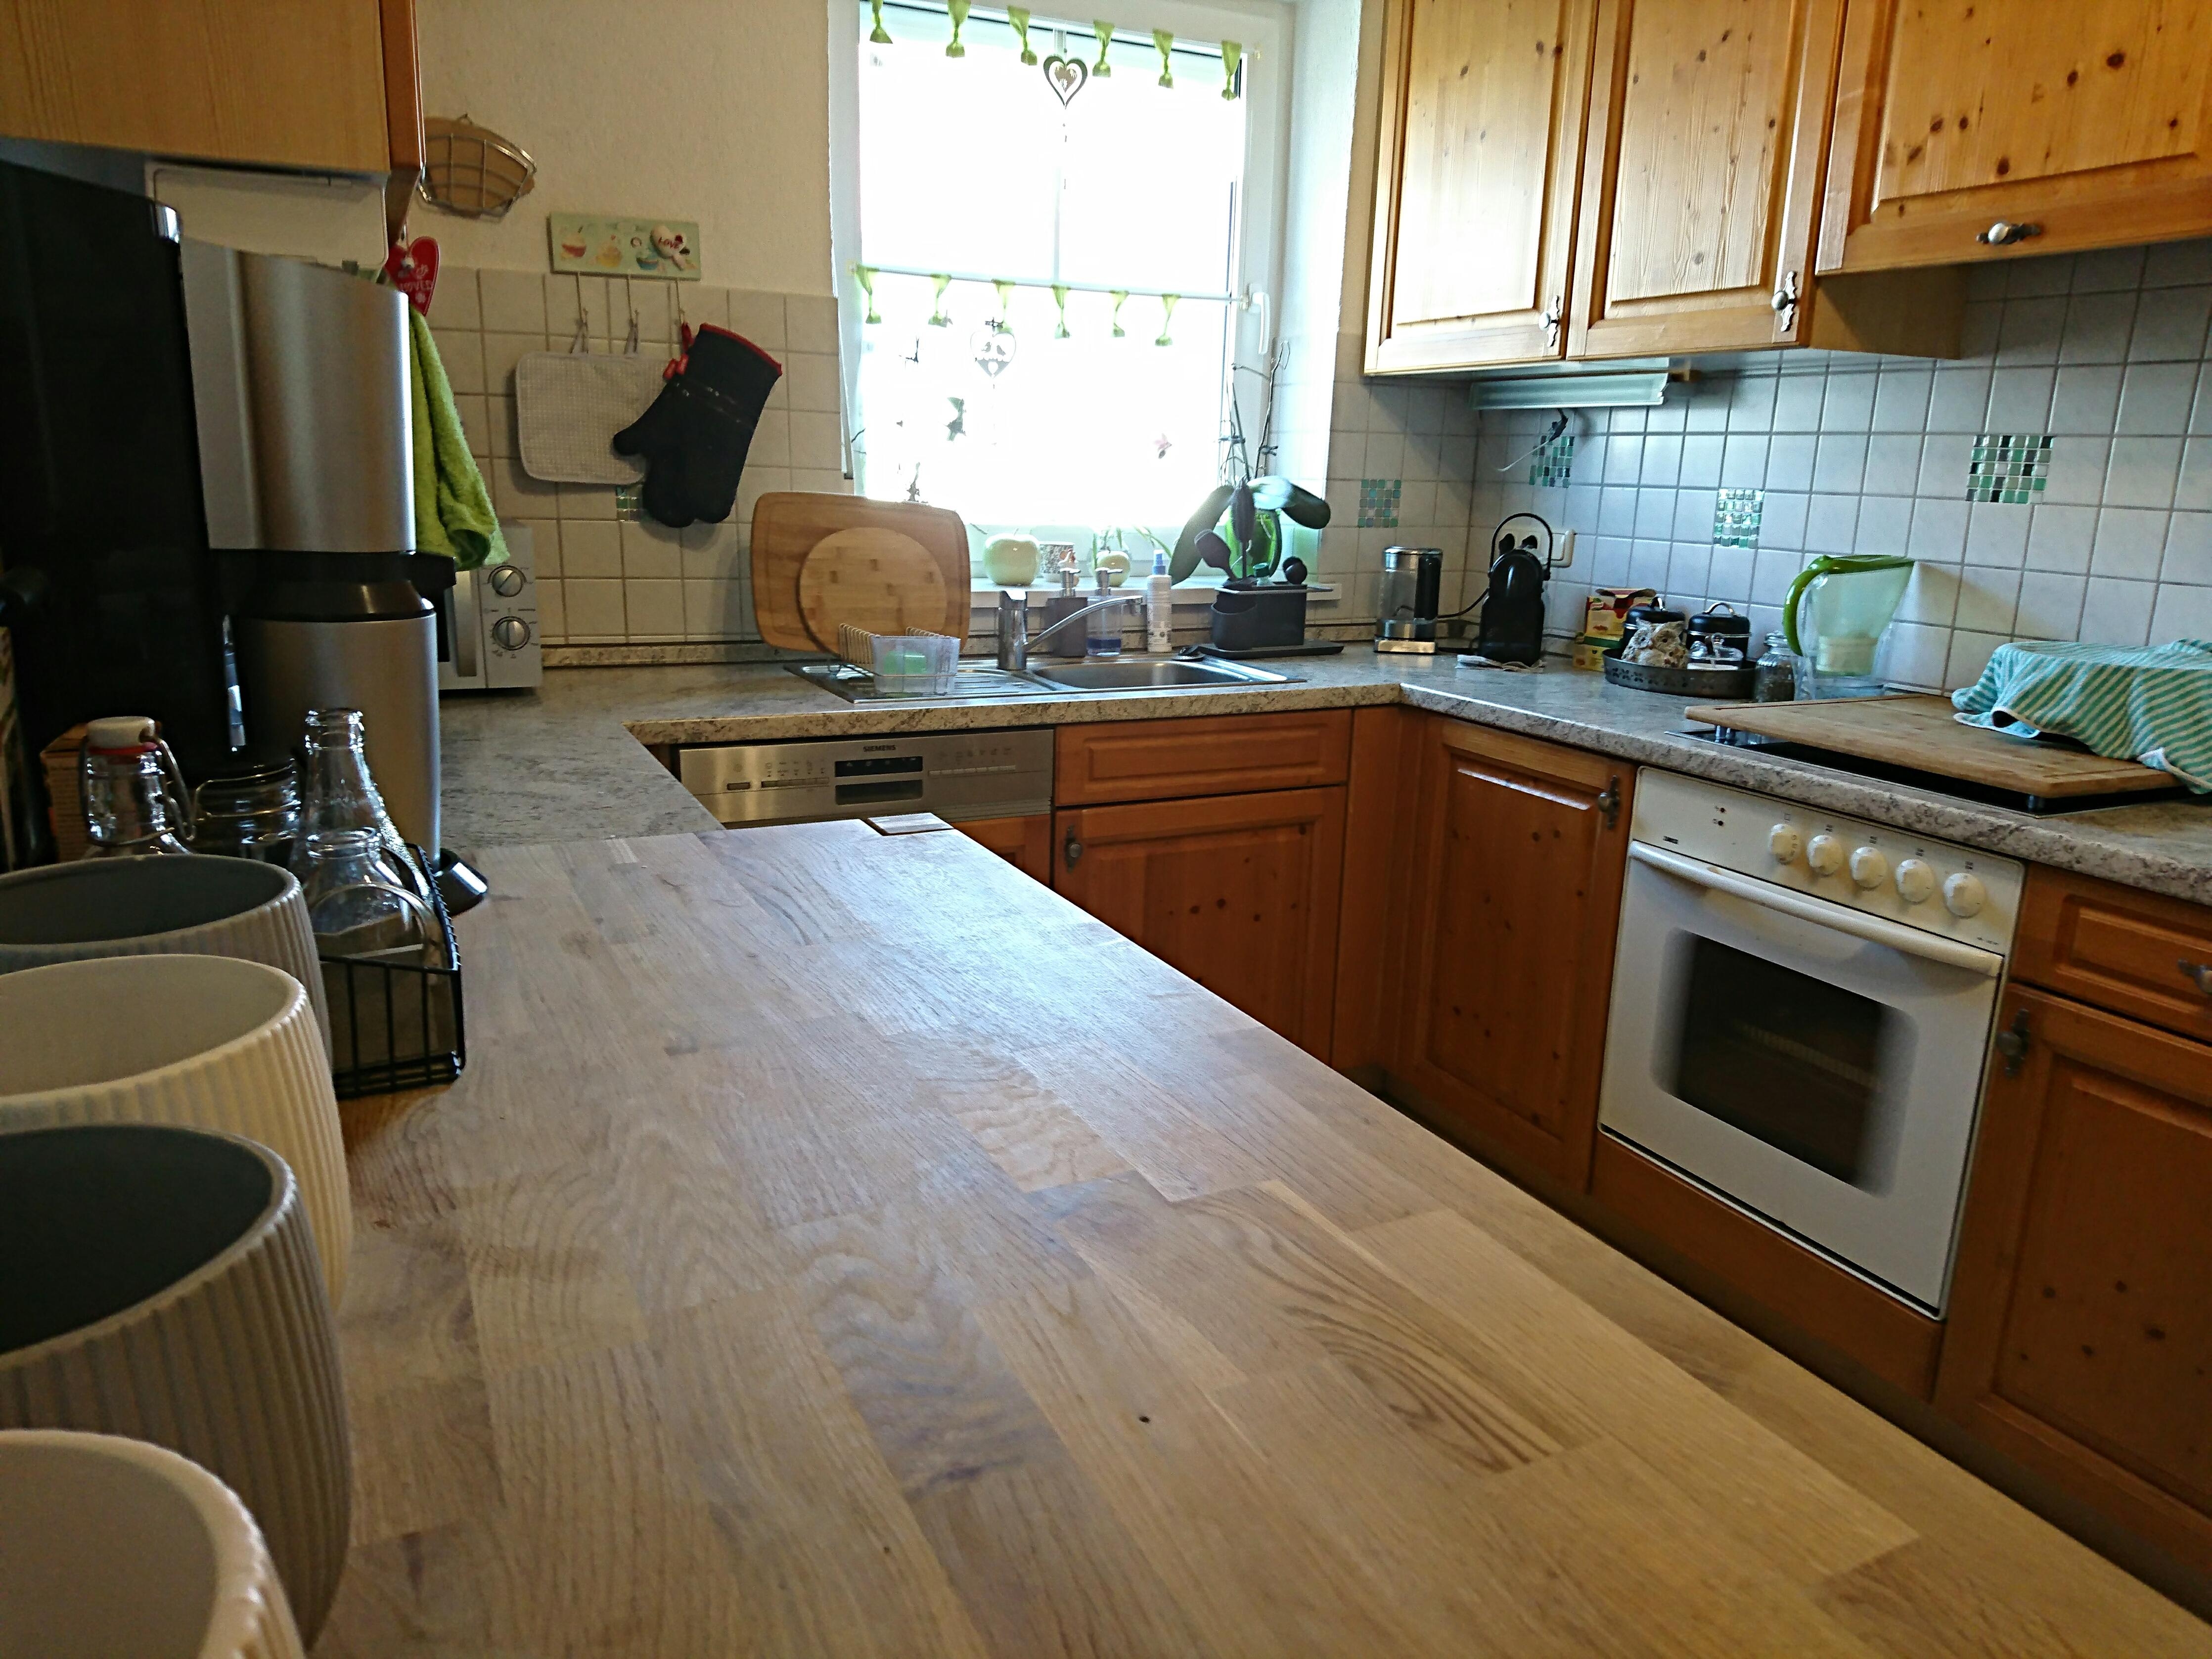 Meine Küche könnte ein Upgrade gebrauchen. #grohebluehome wäre perfekt, da wir eh immer extra filtern & sprudeln :) 